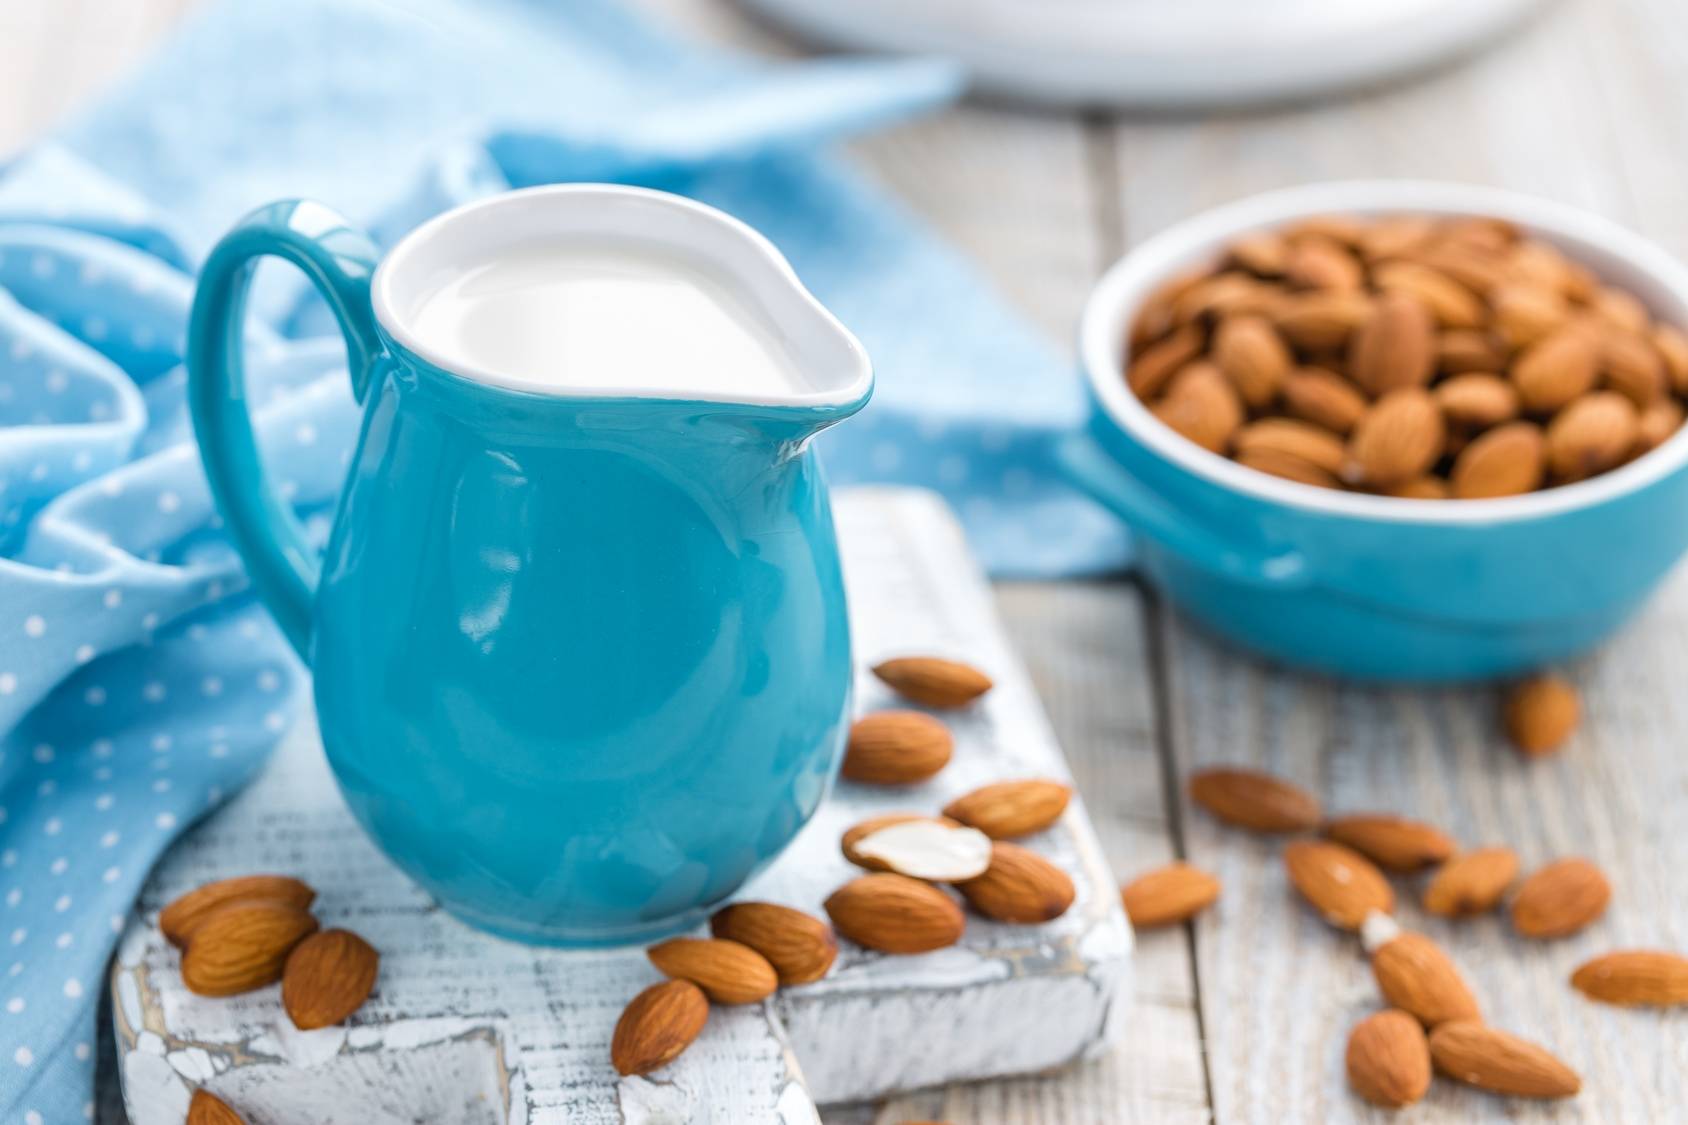 Mleko migdałowe - mleko roślinne dla wegan i osób z nietolerancją laktozy.